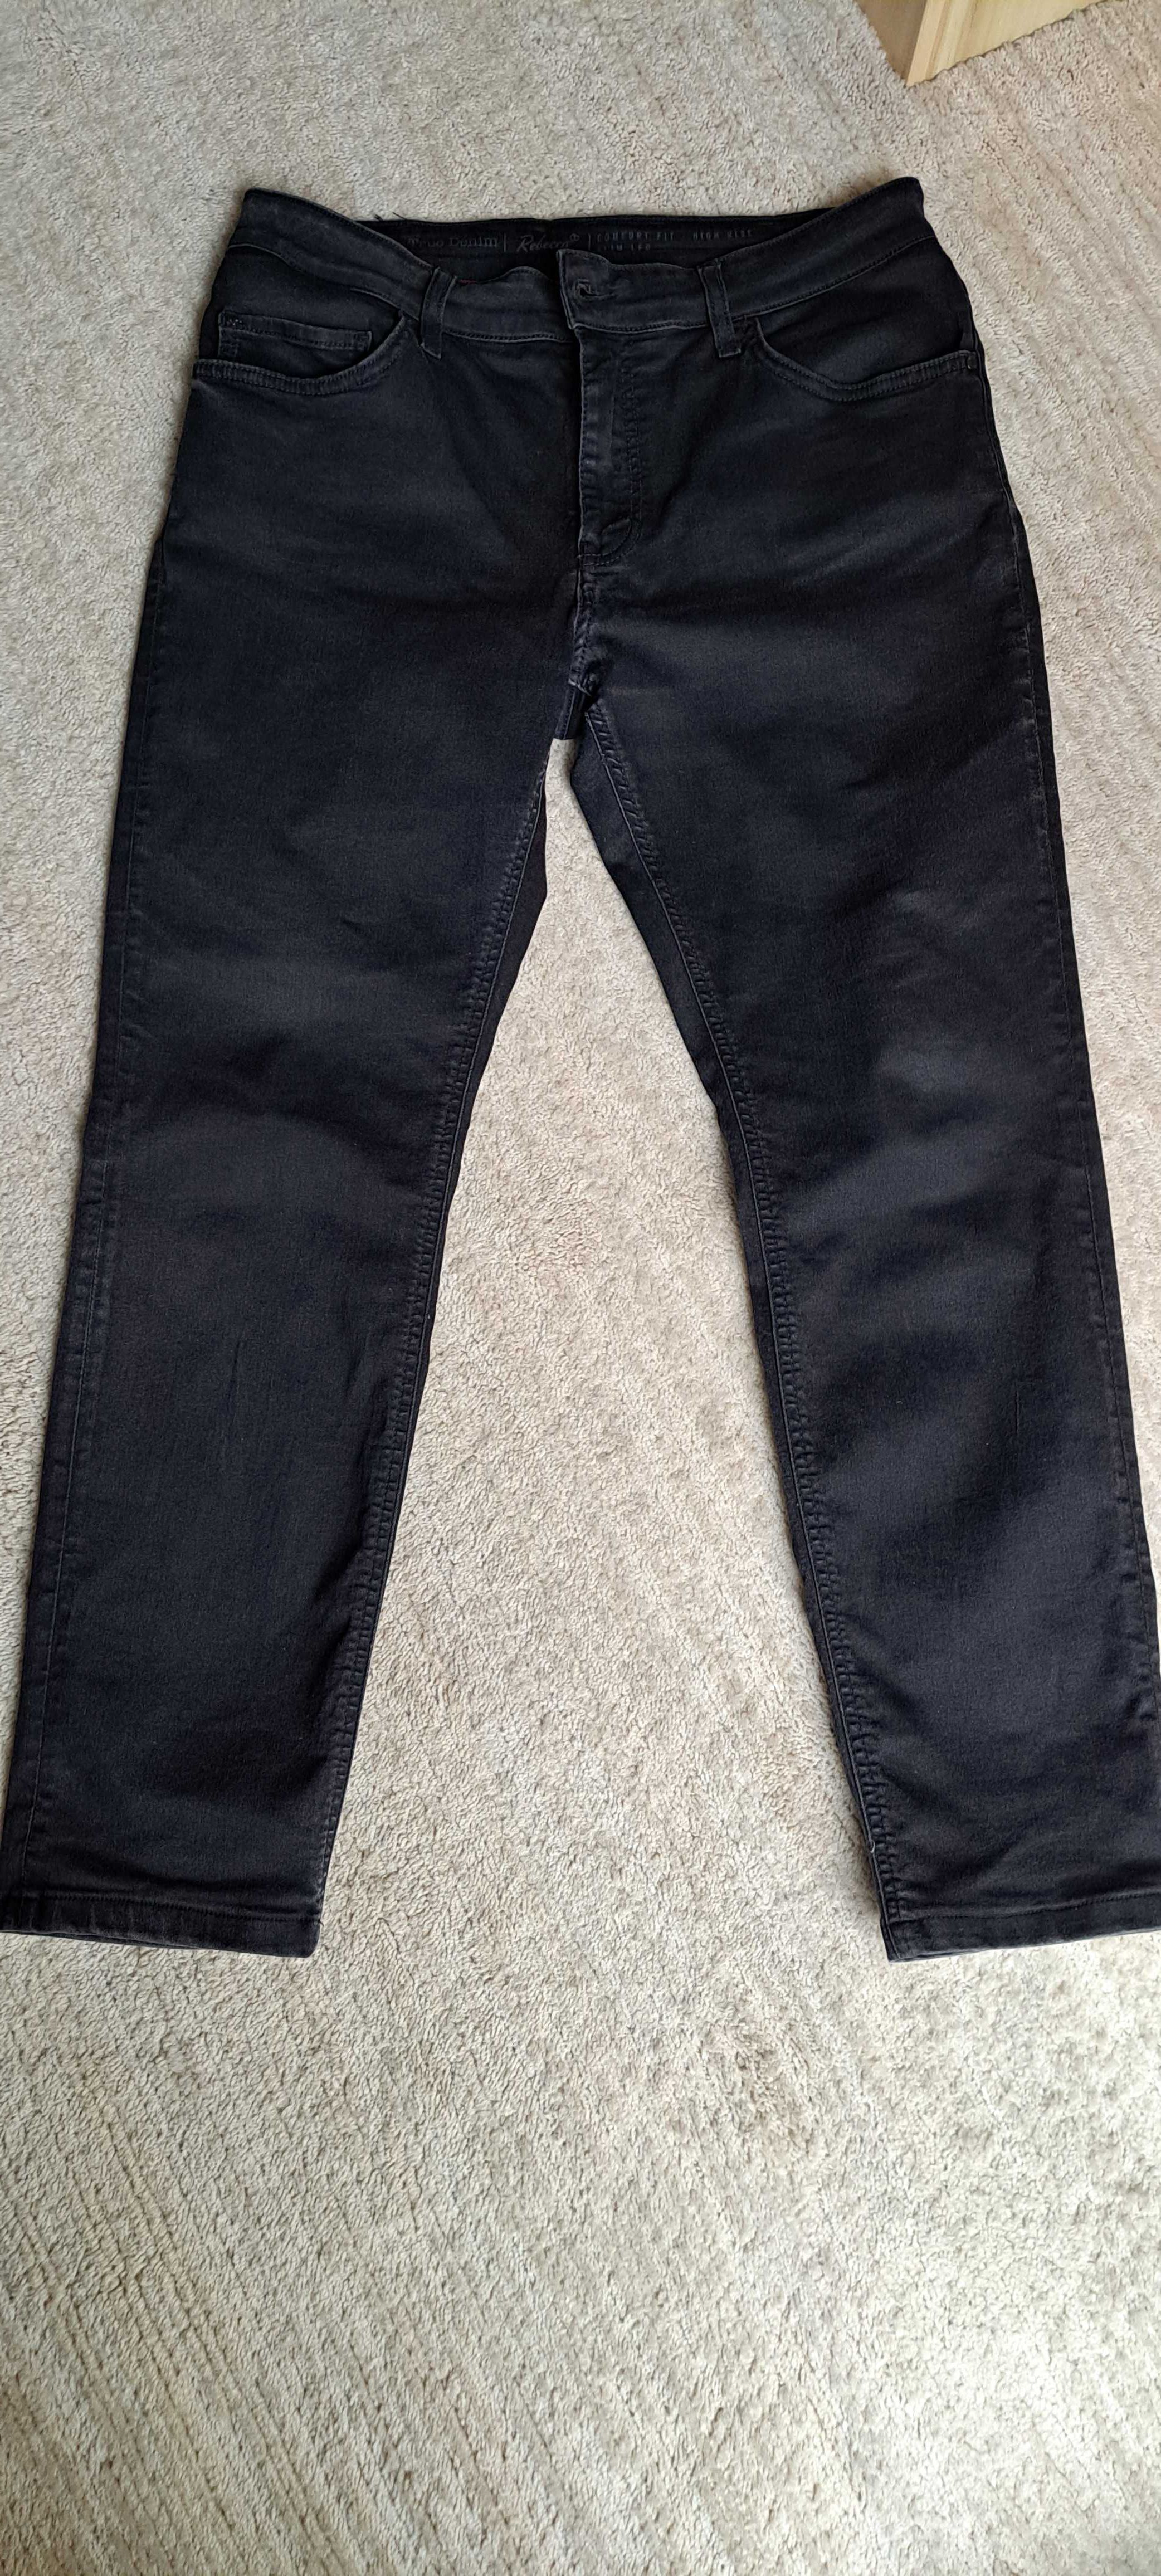 MUSTANG REBECCA spodnie damskie, jeans, rozmiar 33/30, czarne